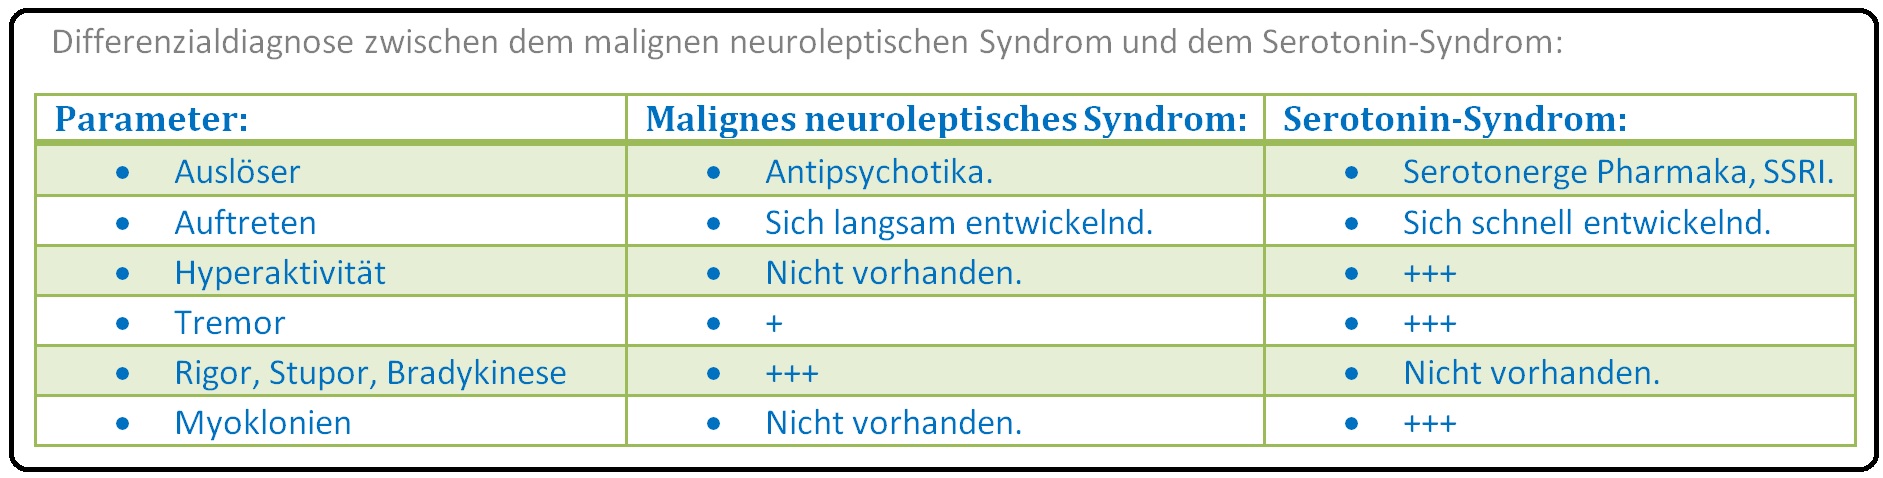 577 Differenzialdiagnose zwischen dem malignen neuroleptischen Syndrom und dem Serotonin Syndrom